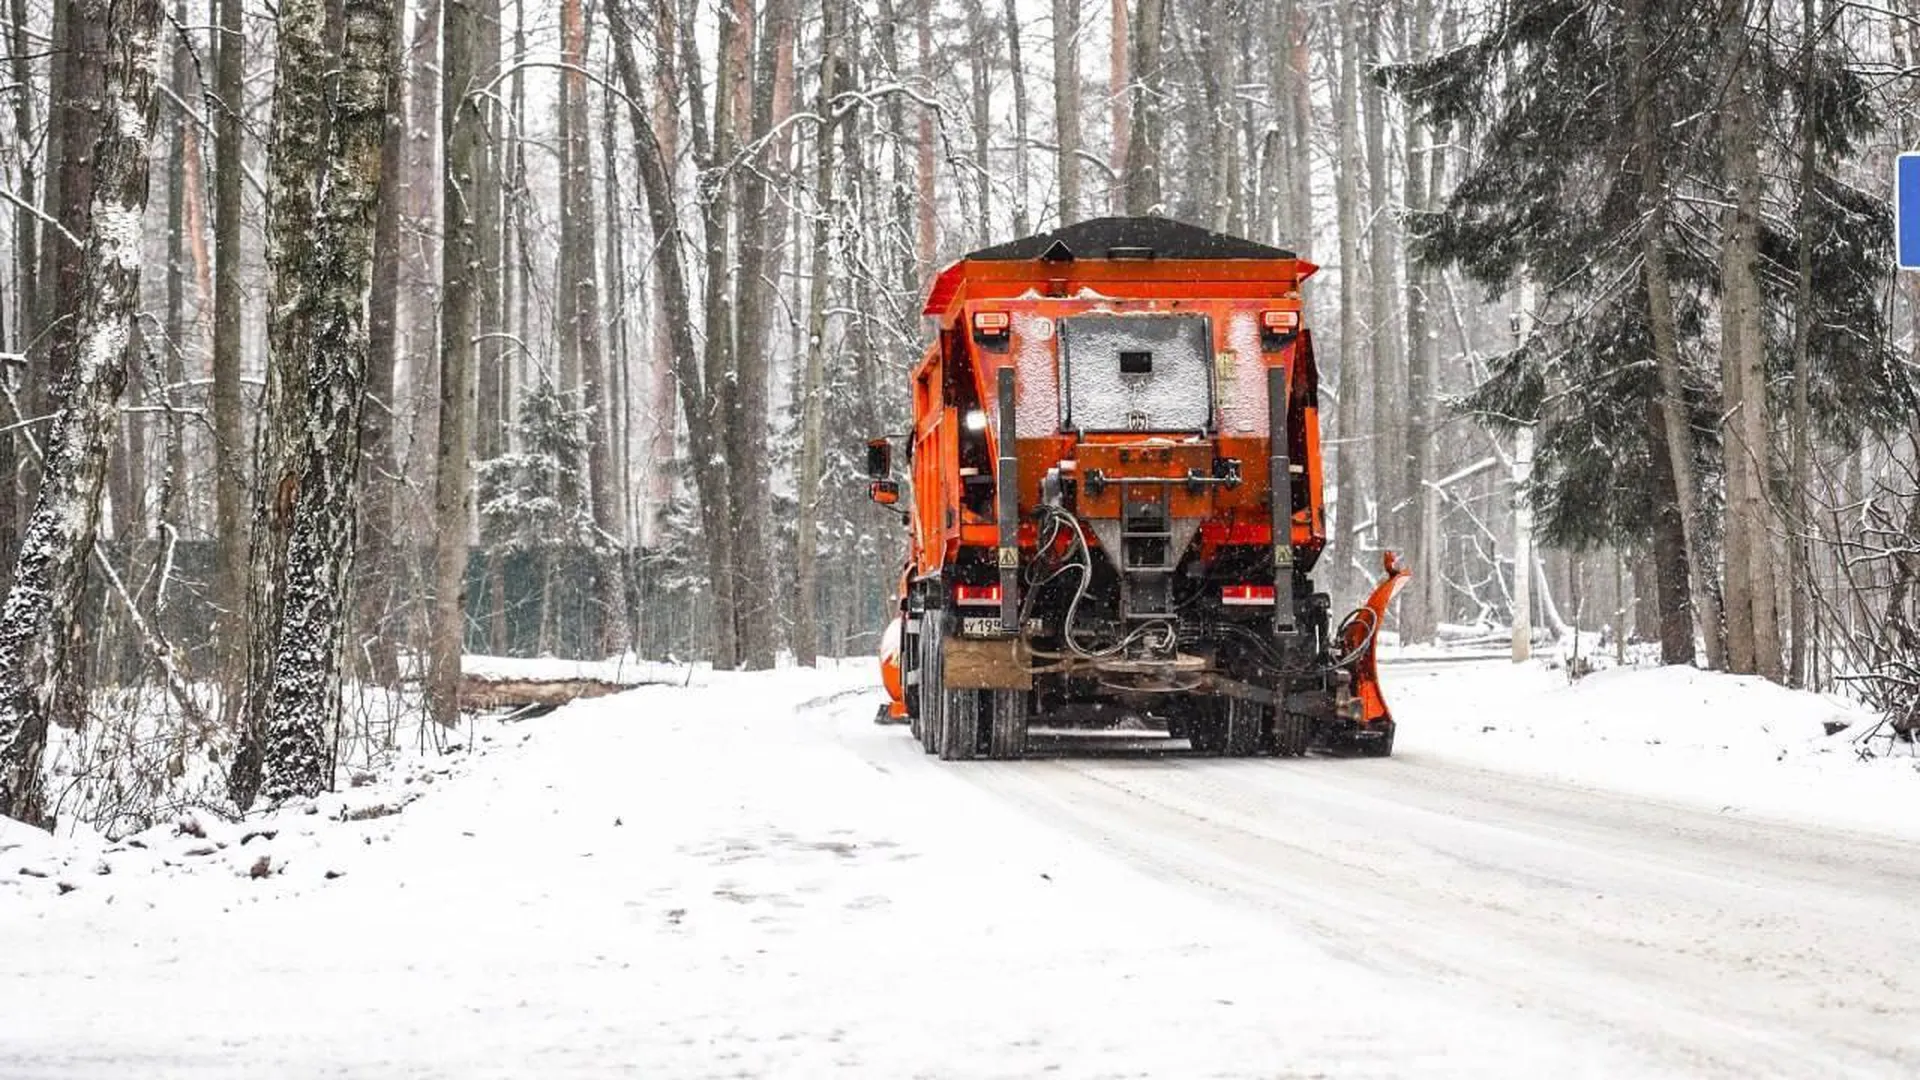 Дорожные службы вывезли более 1 млн куб м снега с территории Подмосковья за зимний сезон